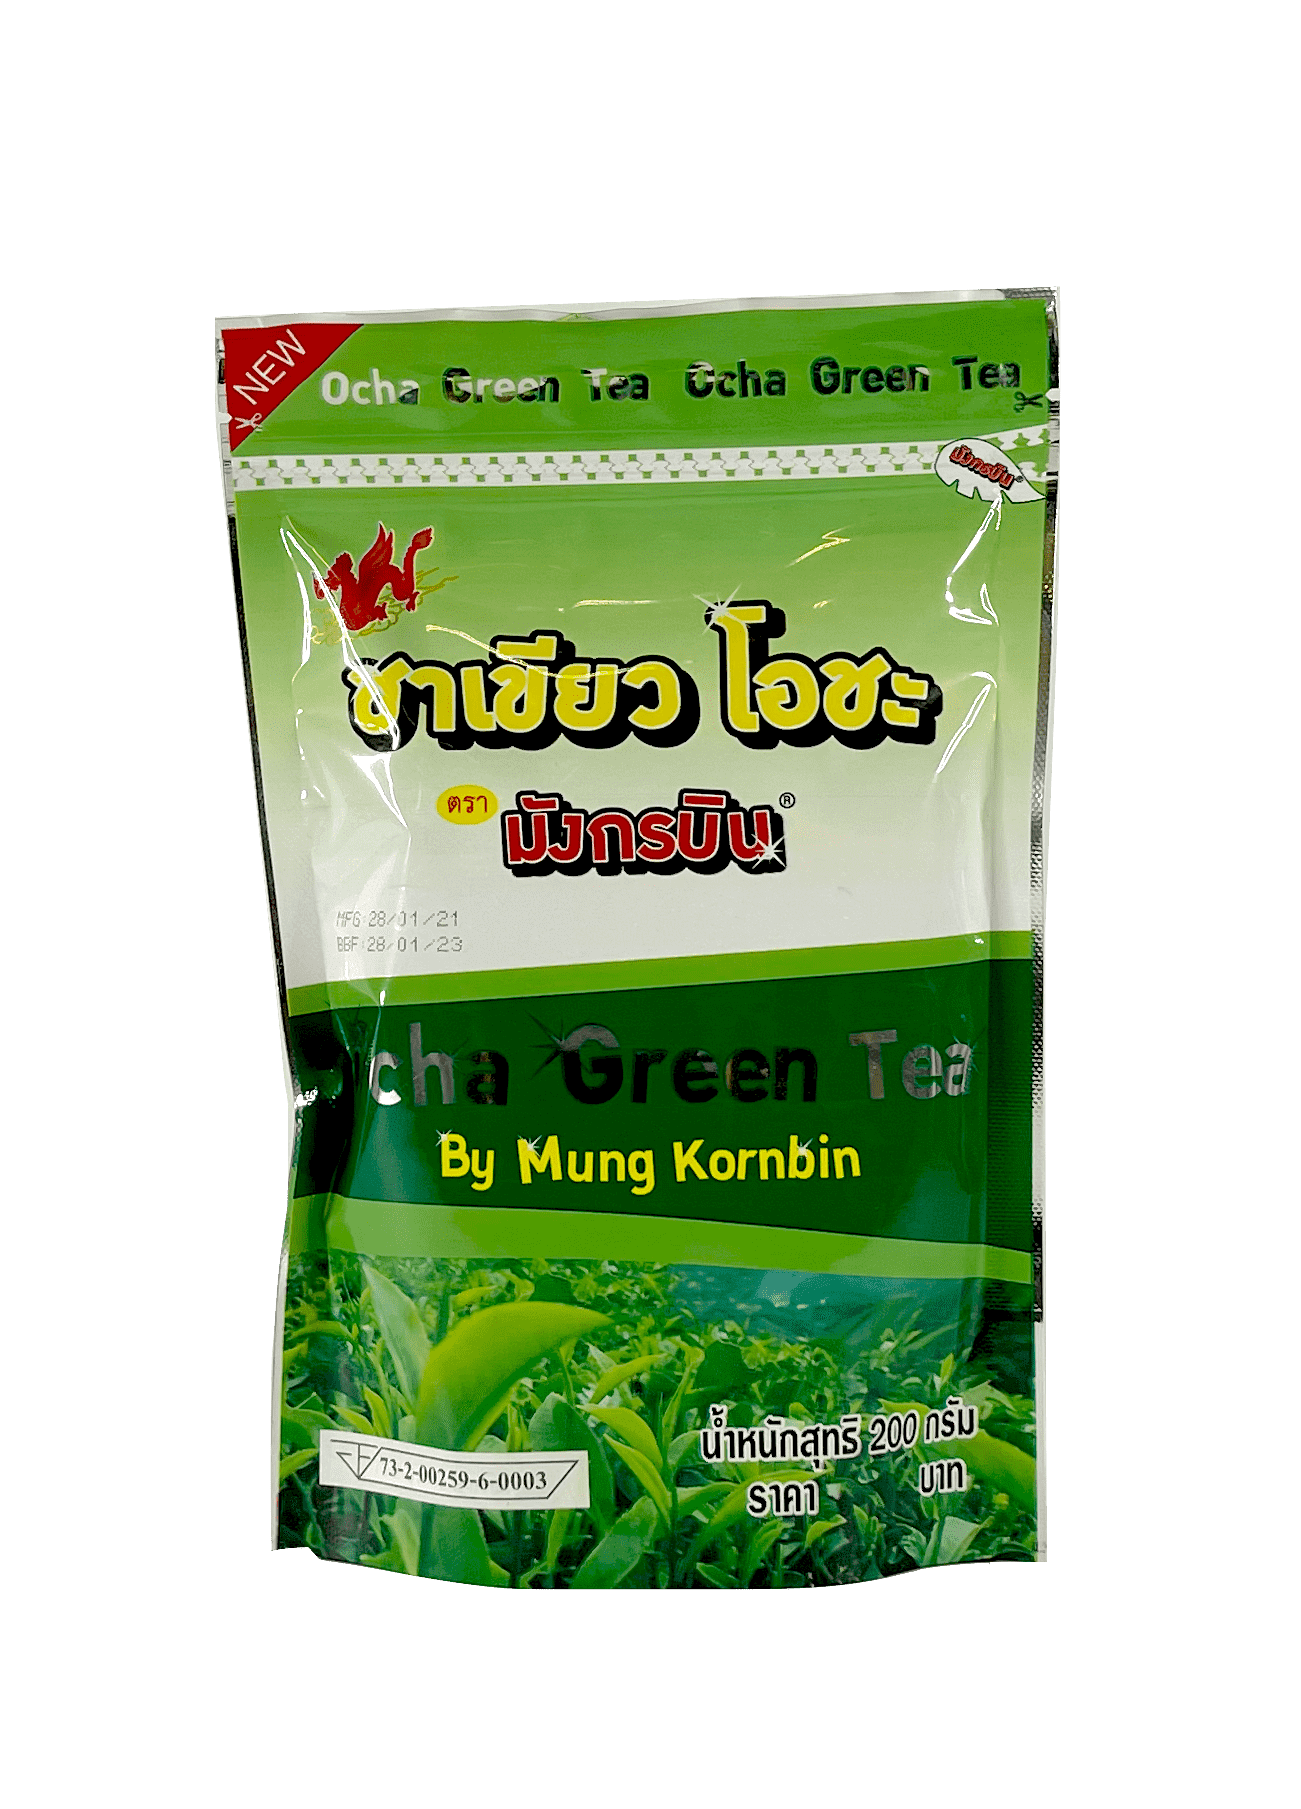 保质期: 2023.01.28 茉莉绿茶 200g Mungkornbin 泰国